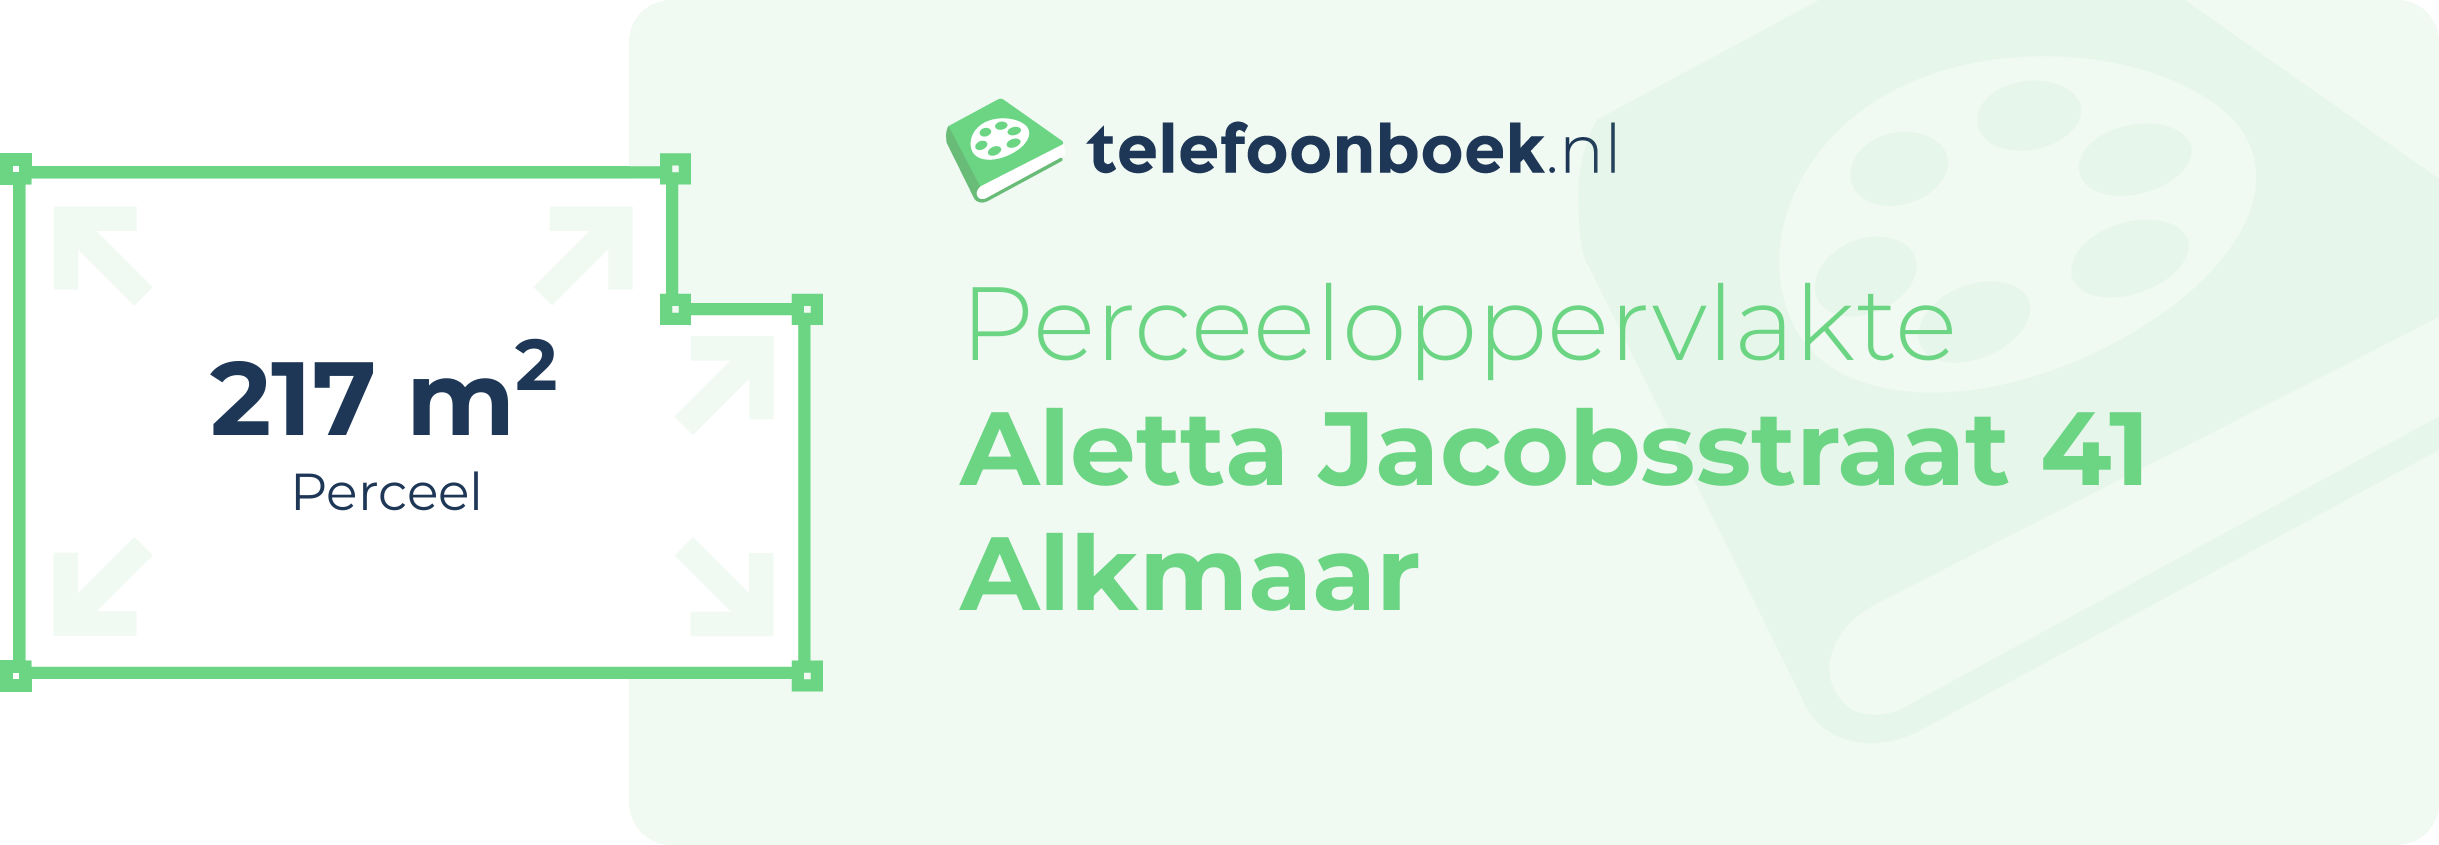 Perceeloppervlakte Aletta Jacobsstraat 41 Alkmaar